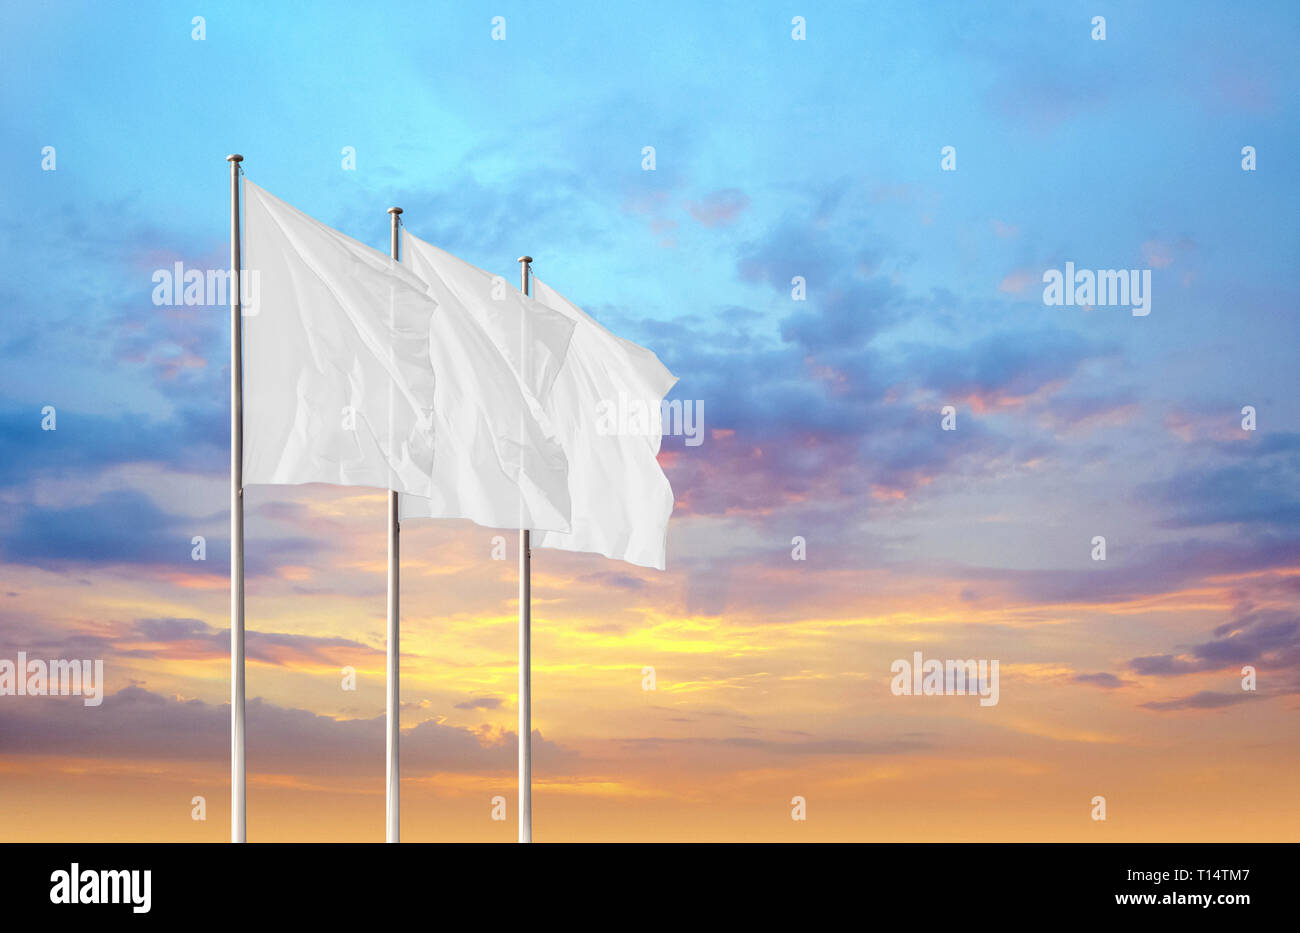 Drei weiße Leere Flaggen im Wind gegen Sonnenuntergang Himmel. Perfekte mockup alle Logos, Symbol oder Zeichen hinzufügen Stockfoto